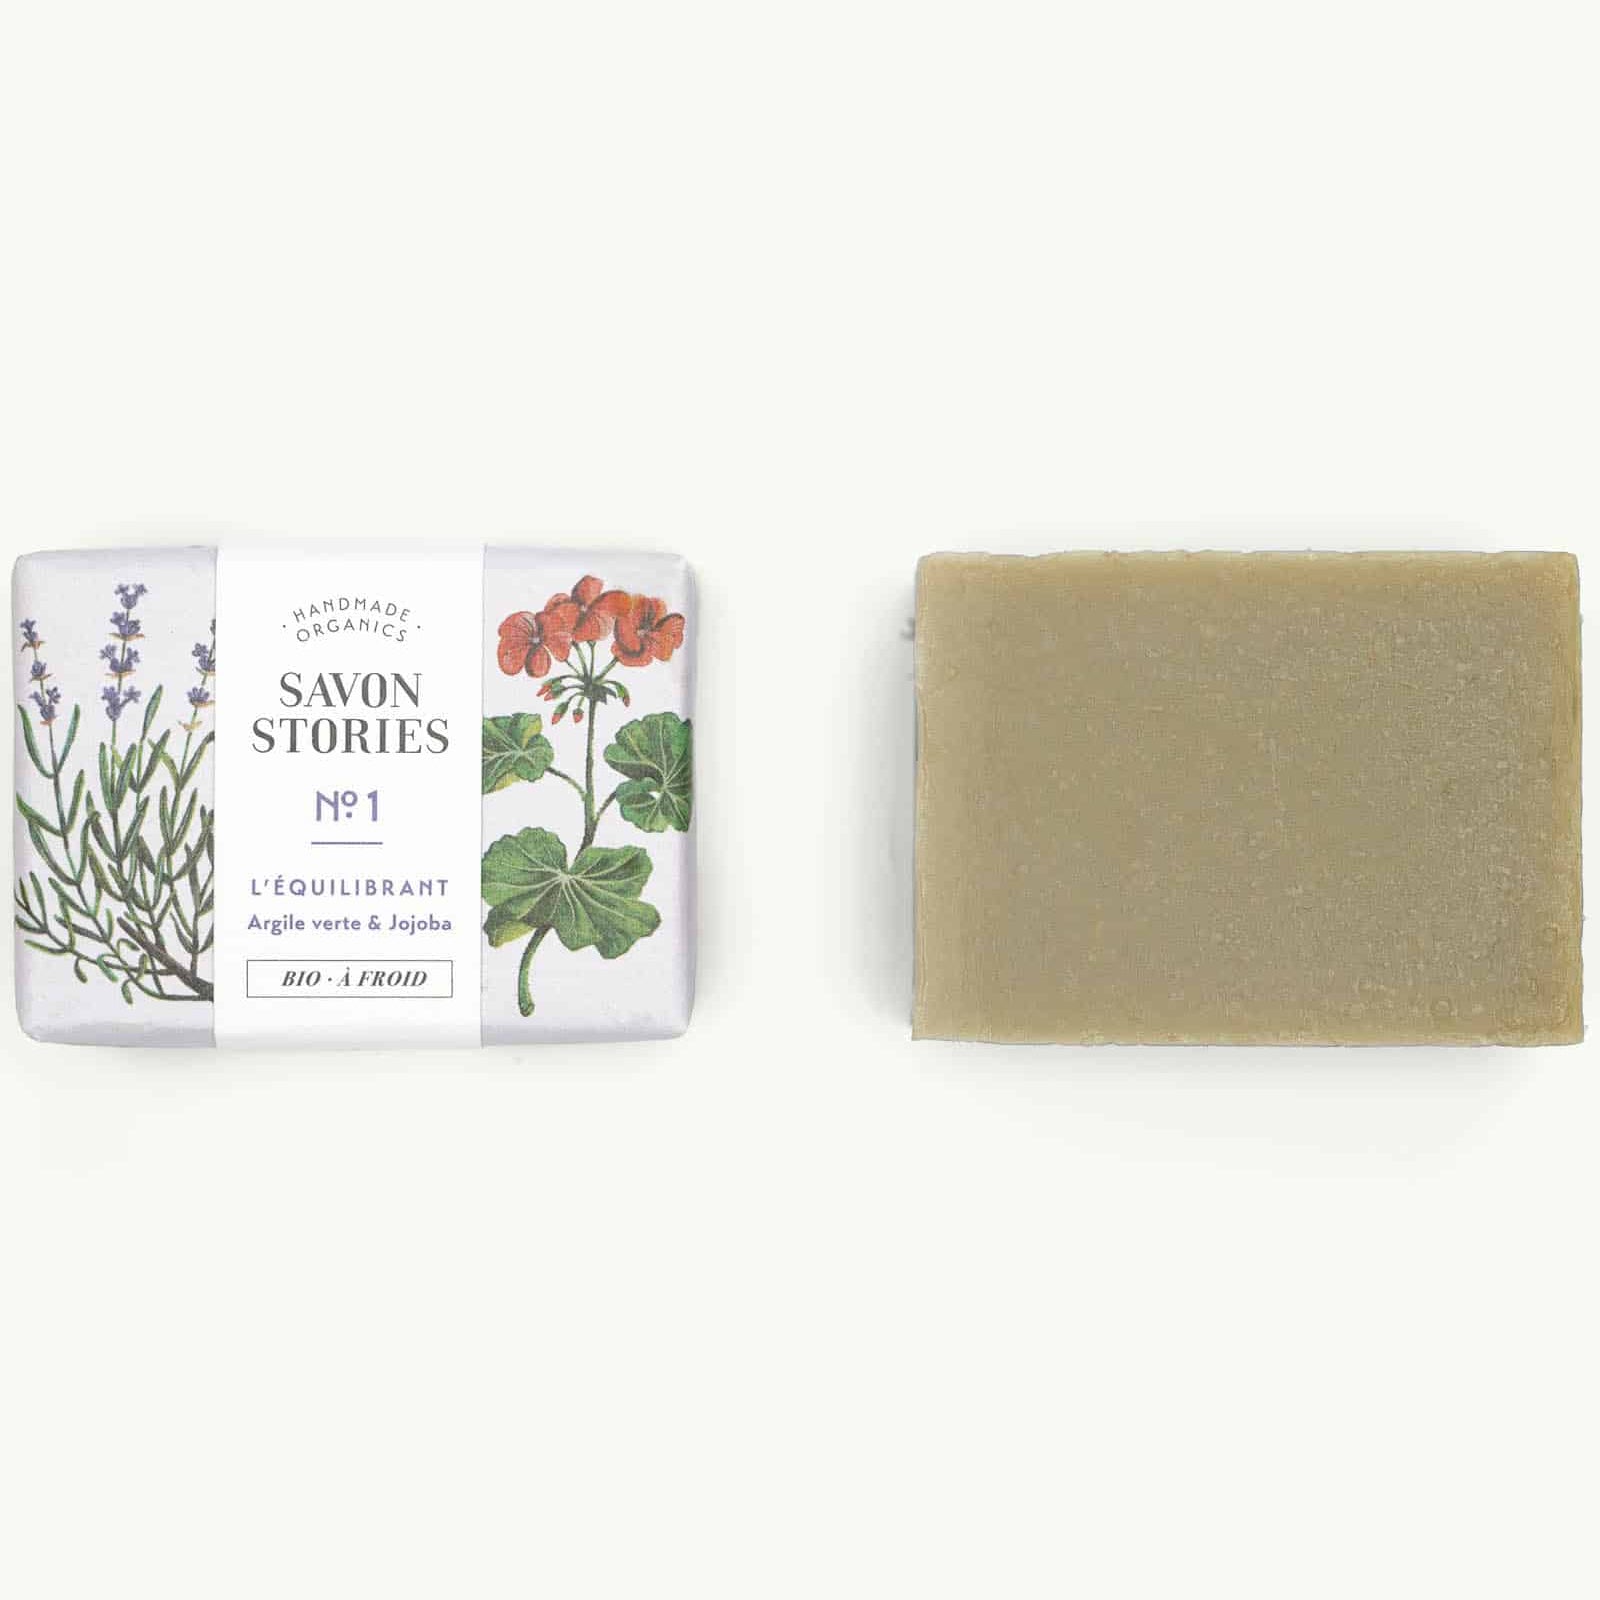 Green Clay Organic & Natural Soap